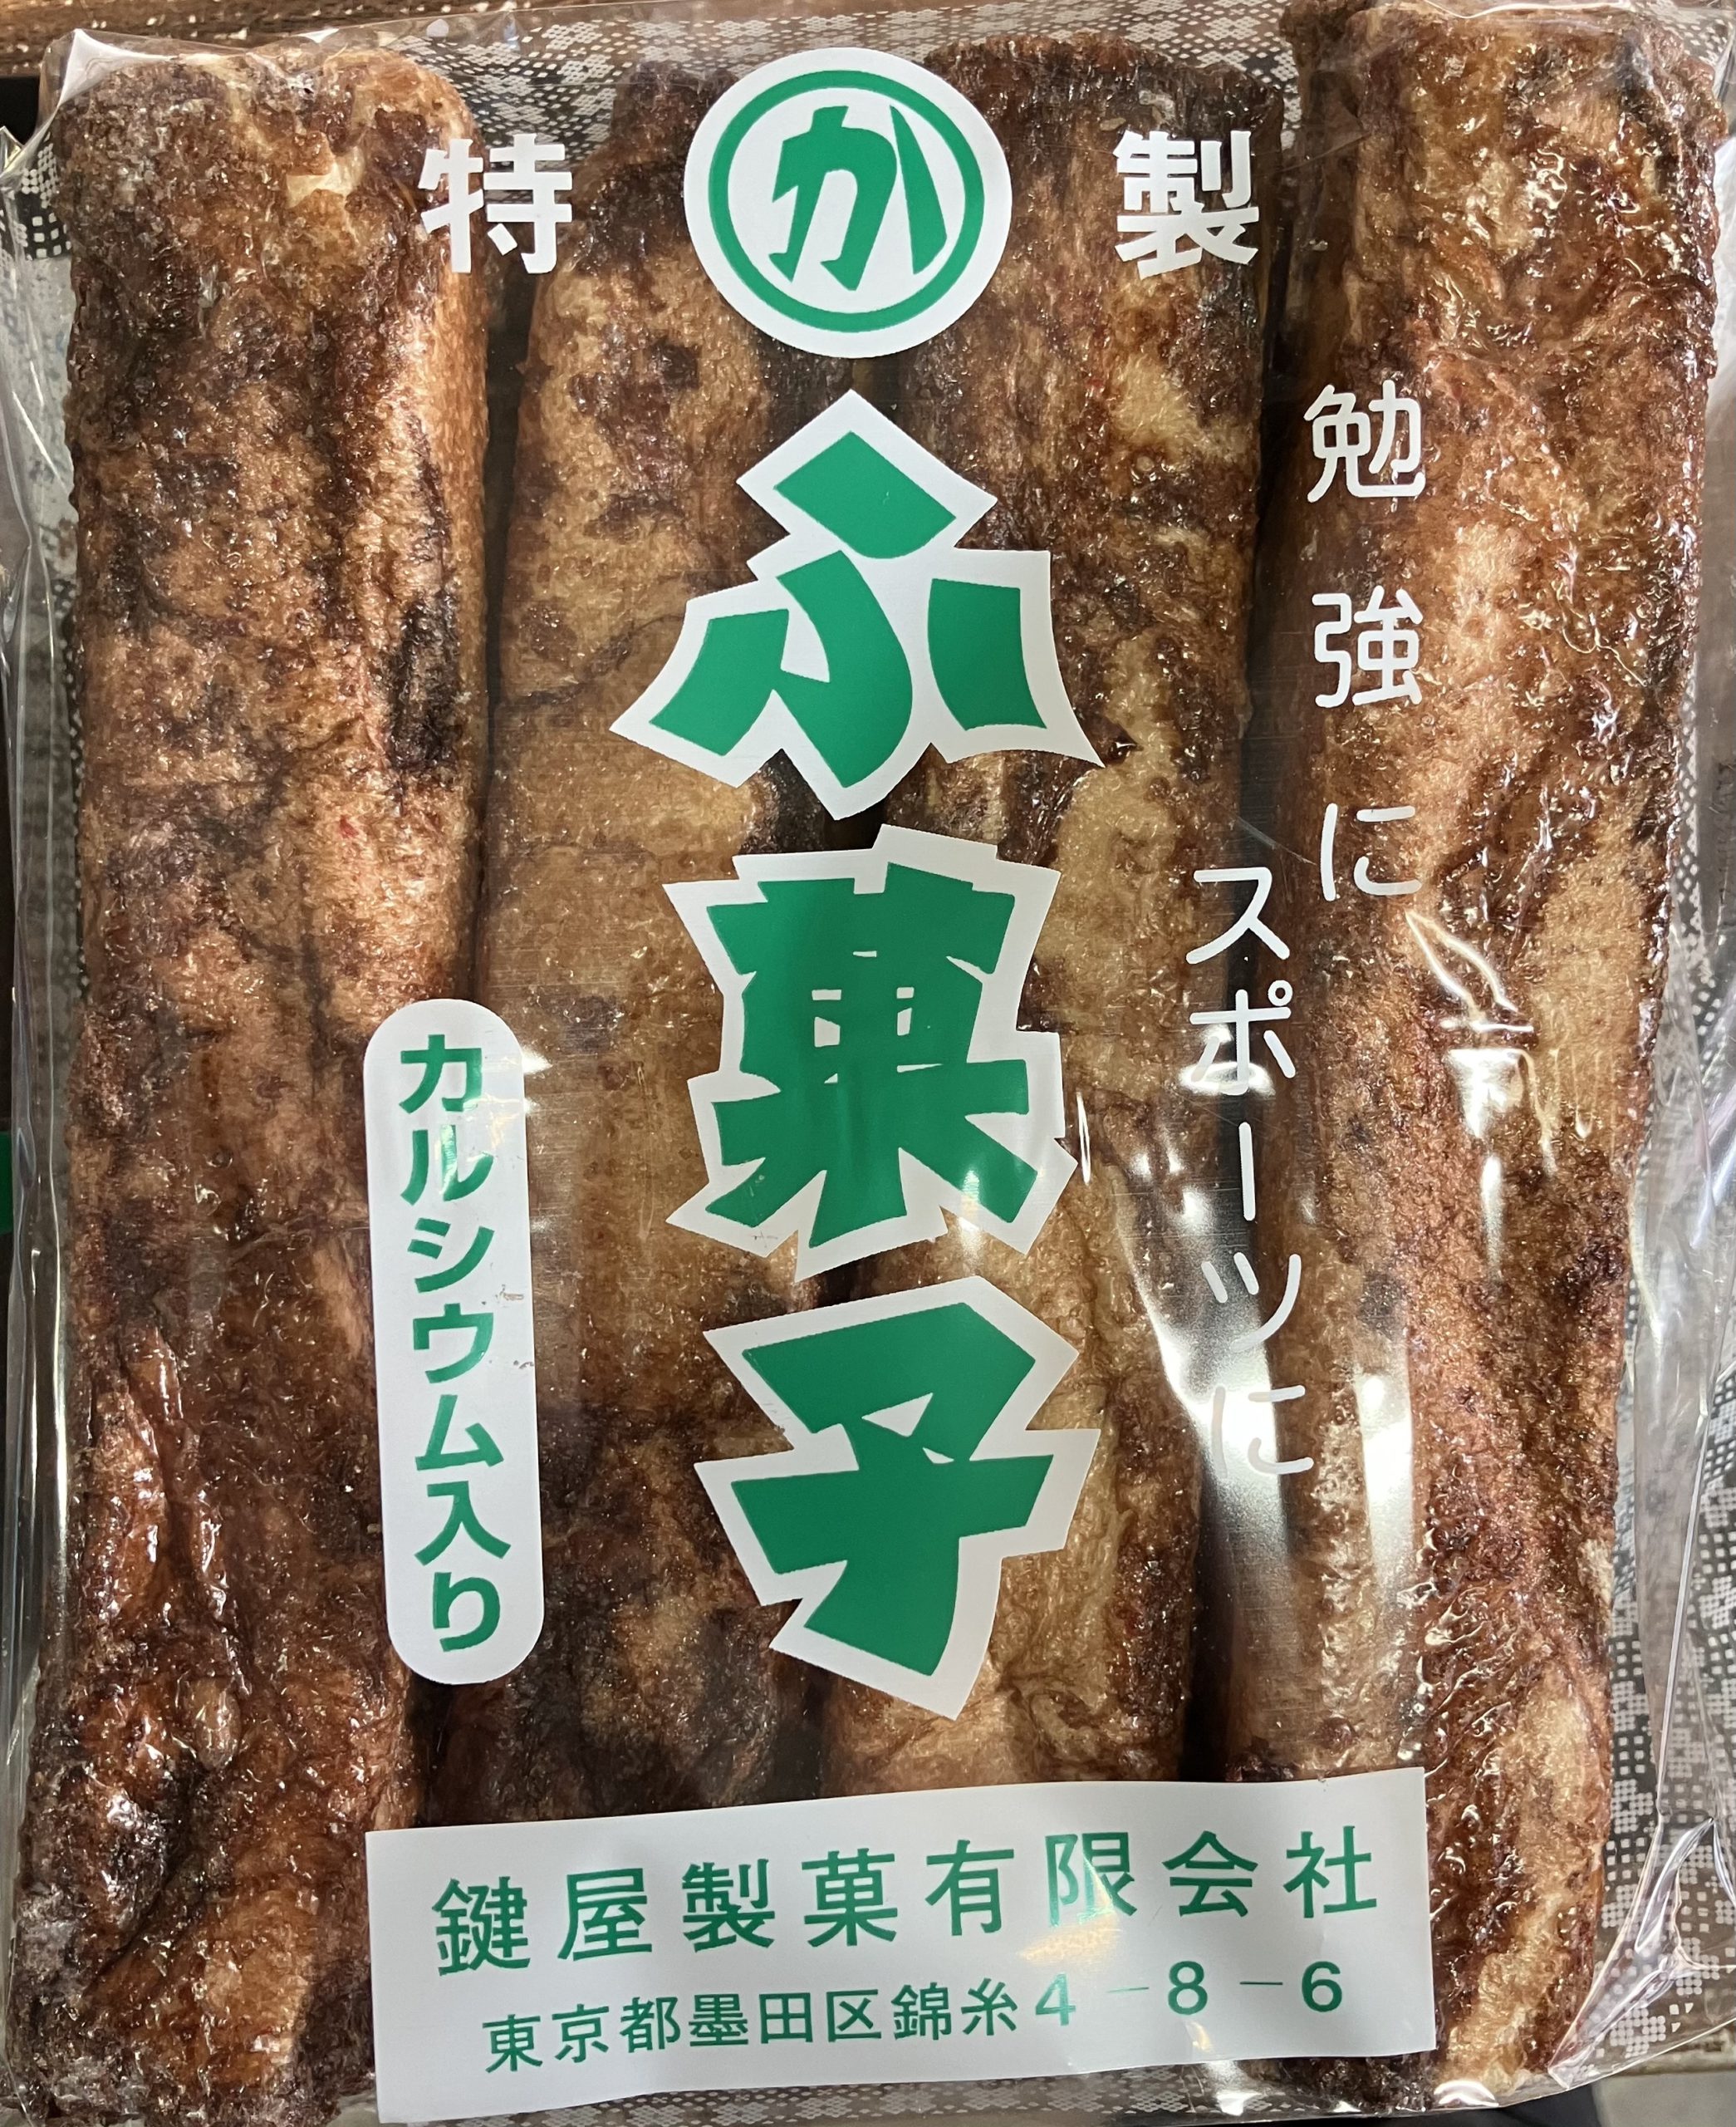 かぎやのふ菓子(12本入り)